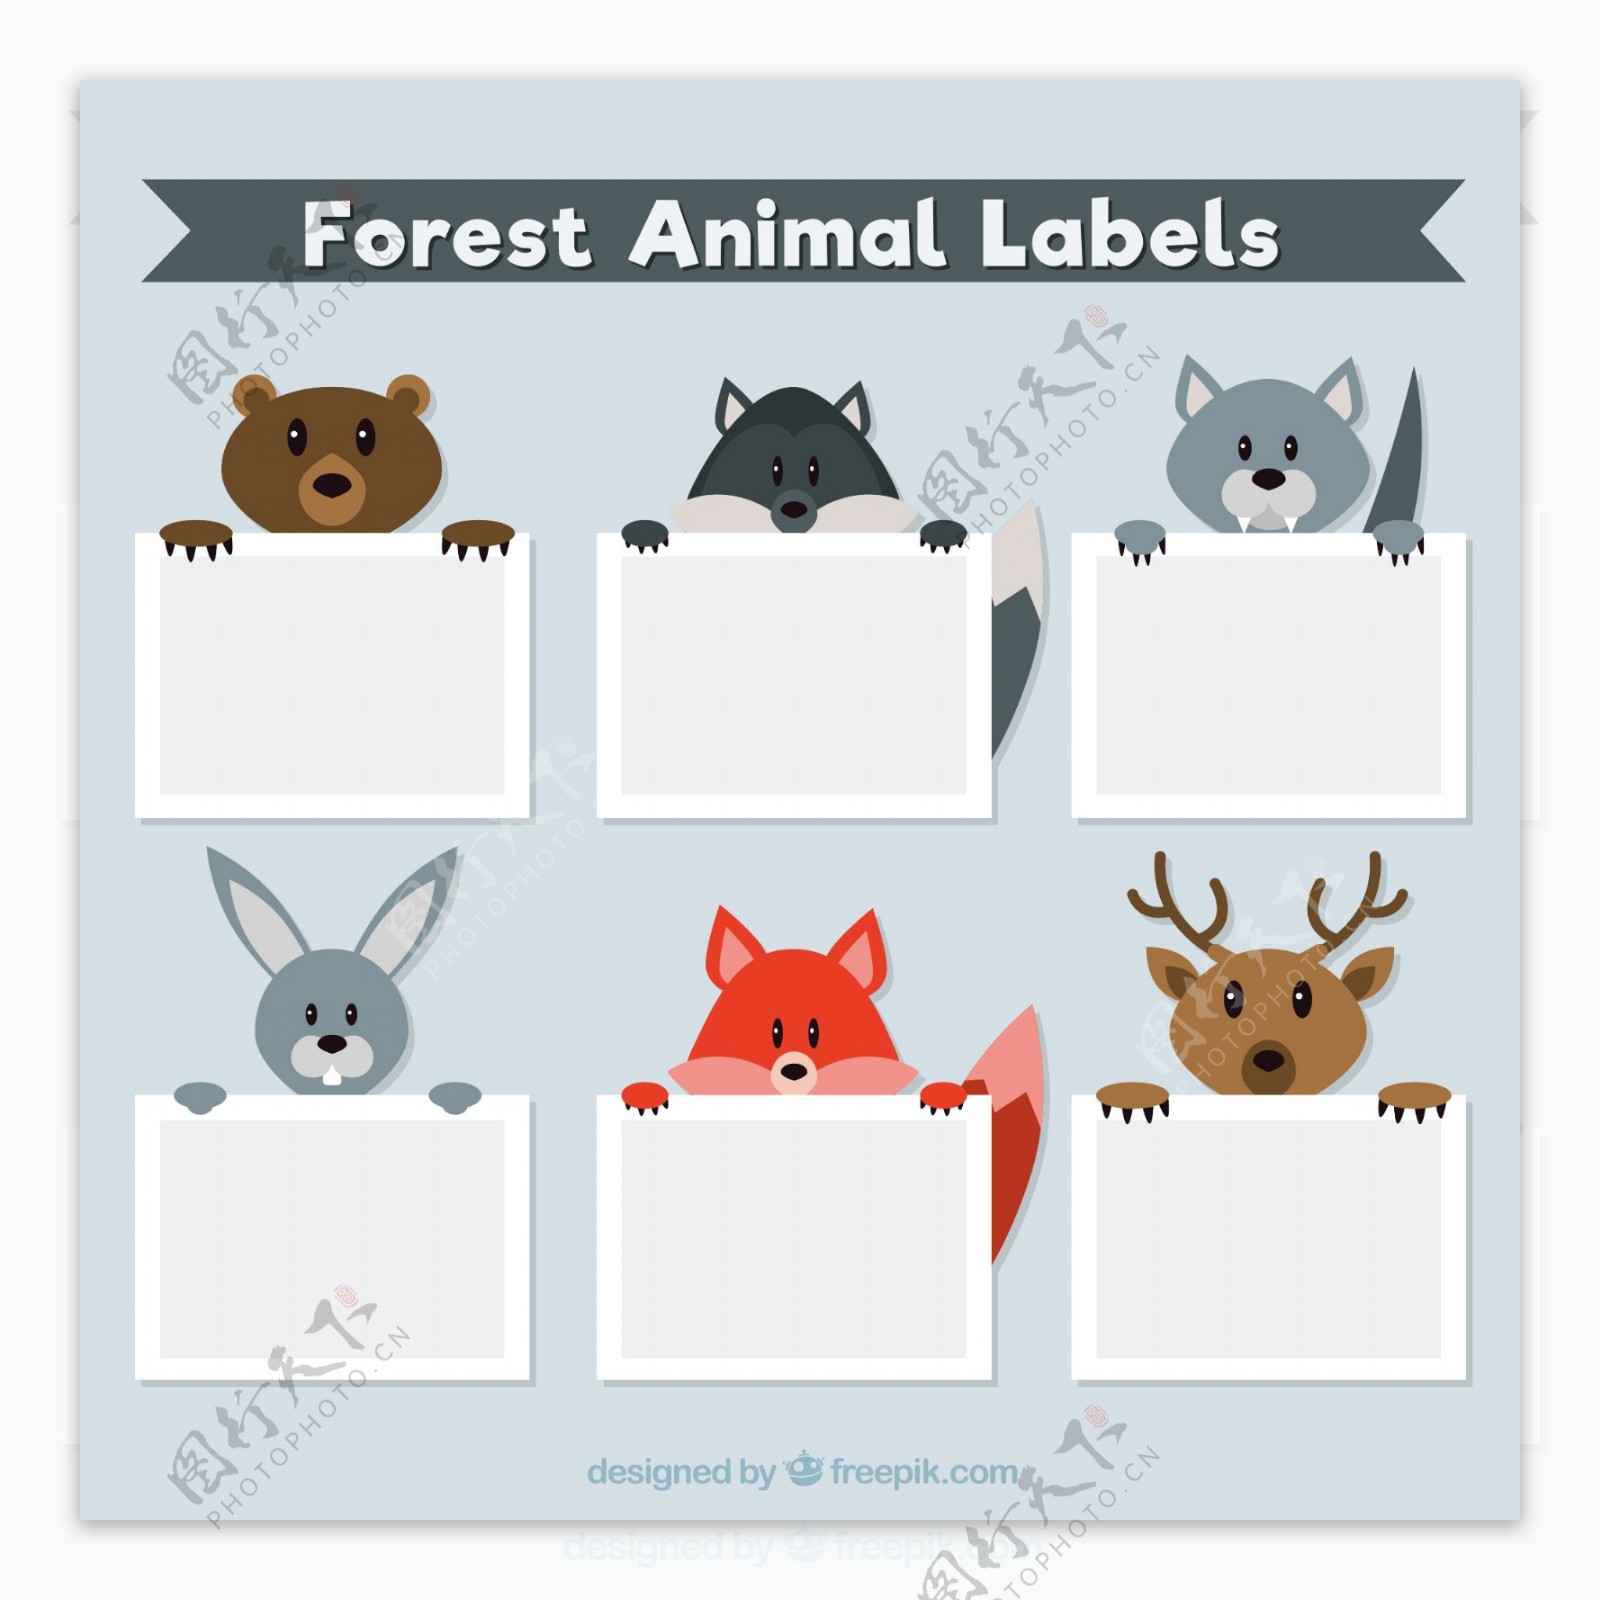 6款创意森林动物标签矢量